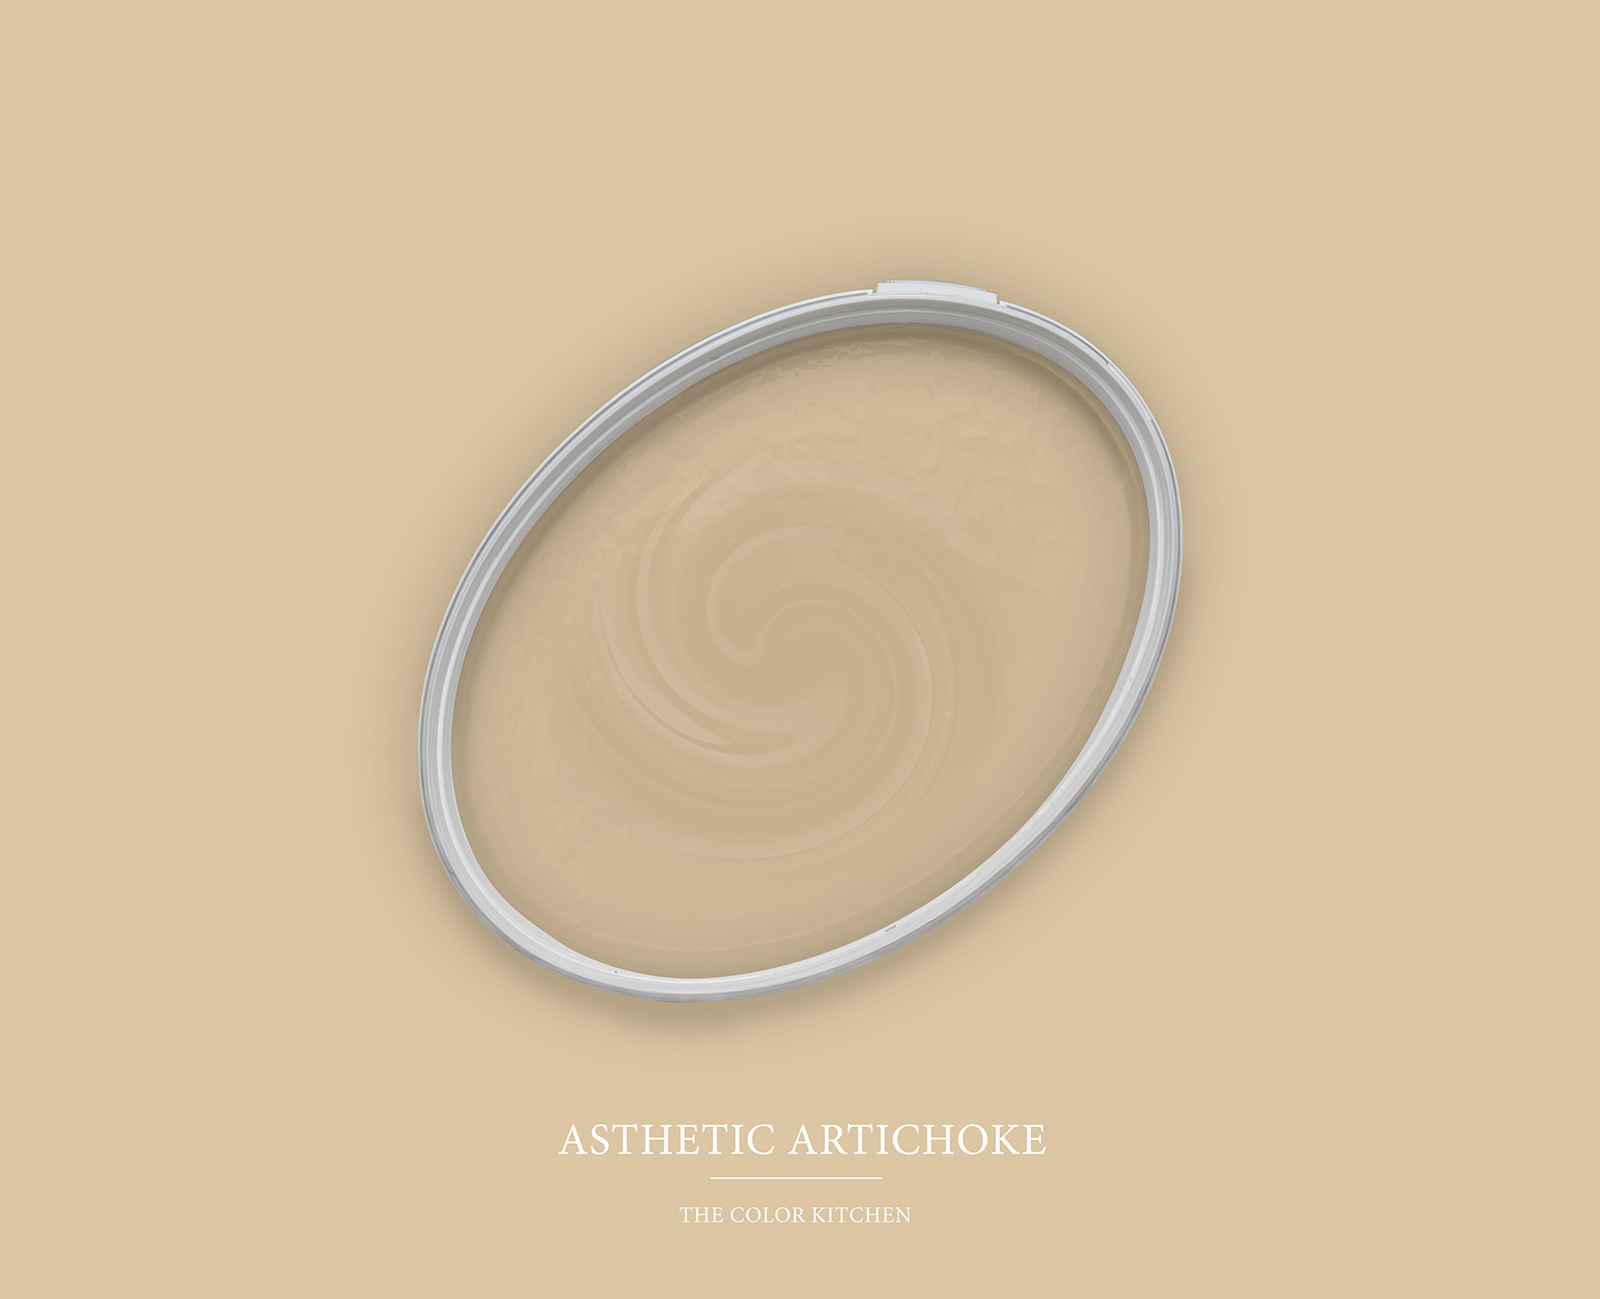 Wall Paint TCK6003 »Asthetic Artichoke« in homely beige – 5.0 litre
